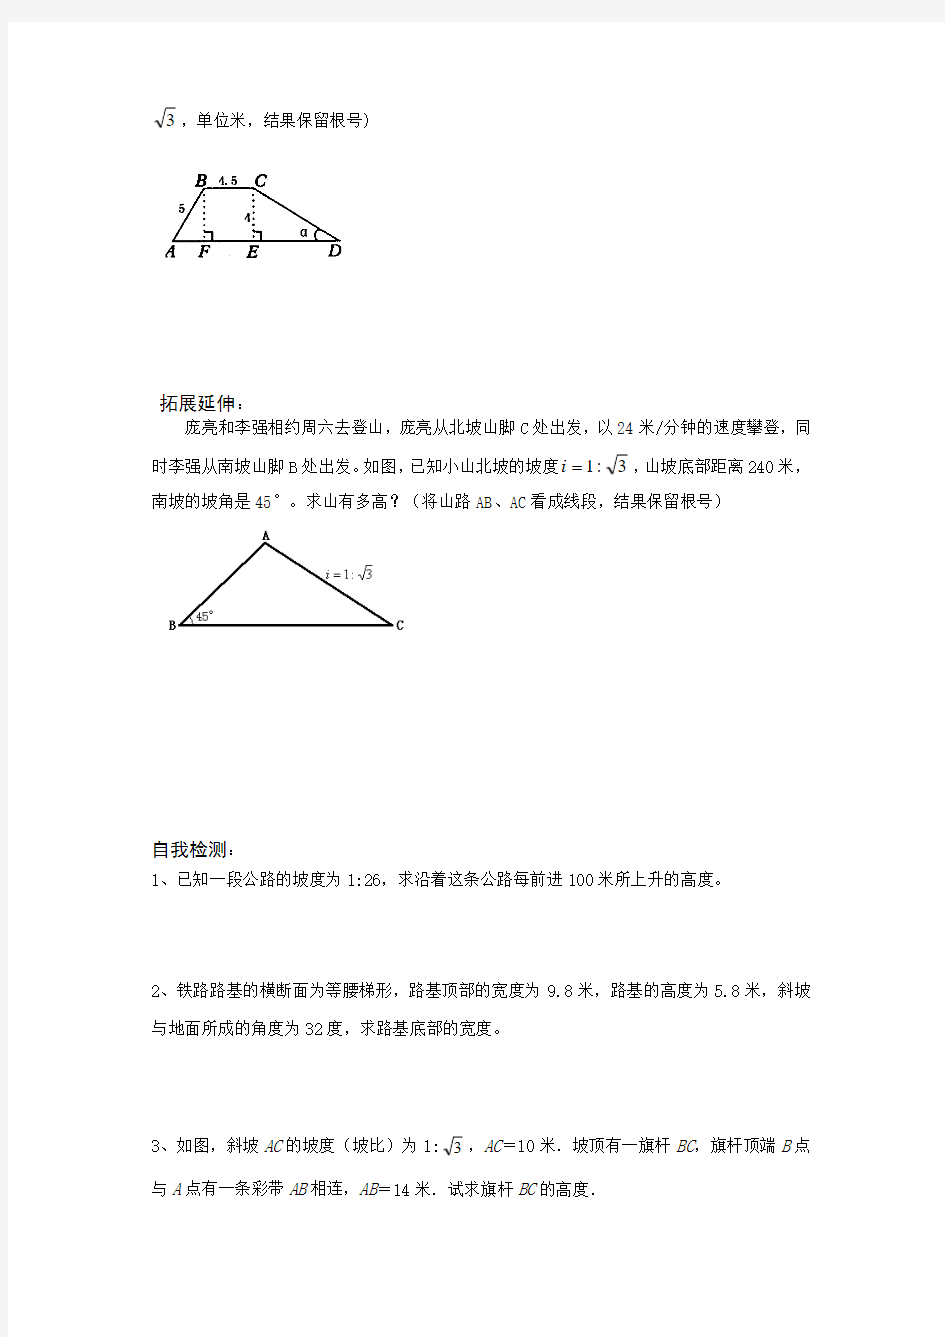 用锐角三角函数解决问题(1)